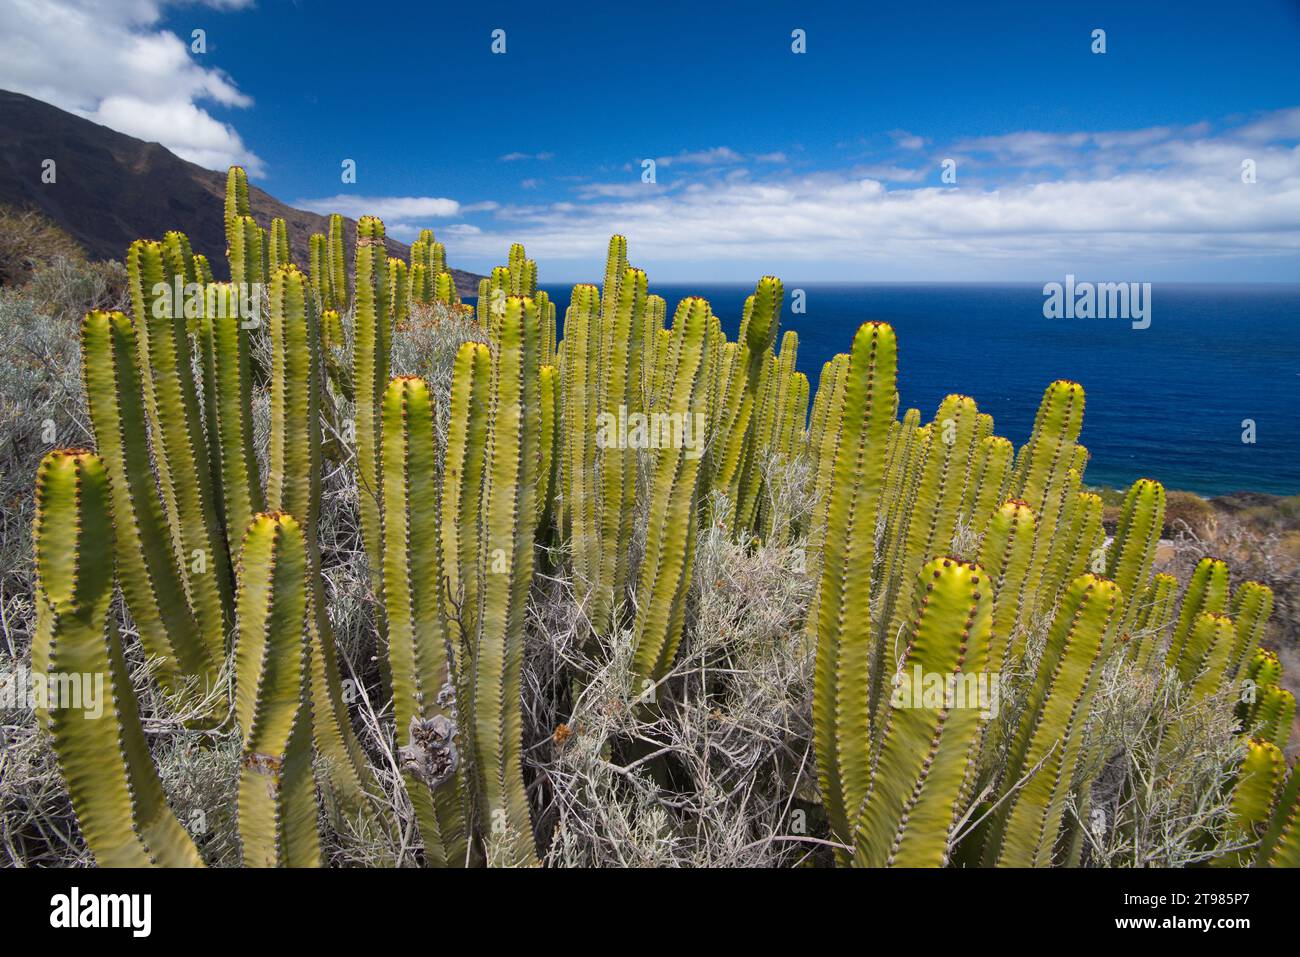 Flora and Landscape of the Island of El Hierro. Flora y paisaje de la Isla de El Hierro Stock Photo